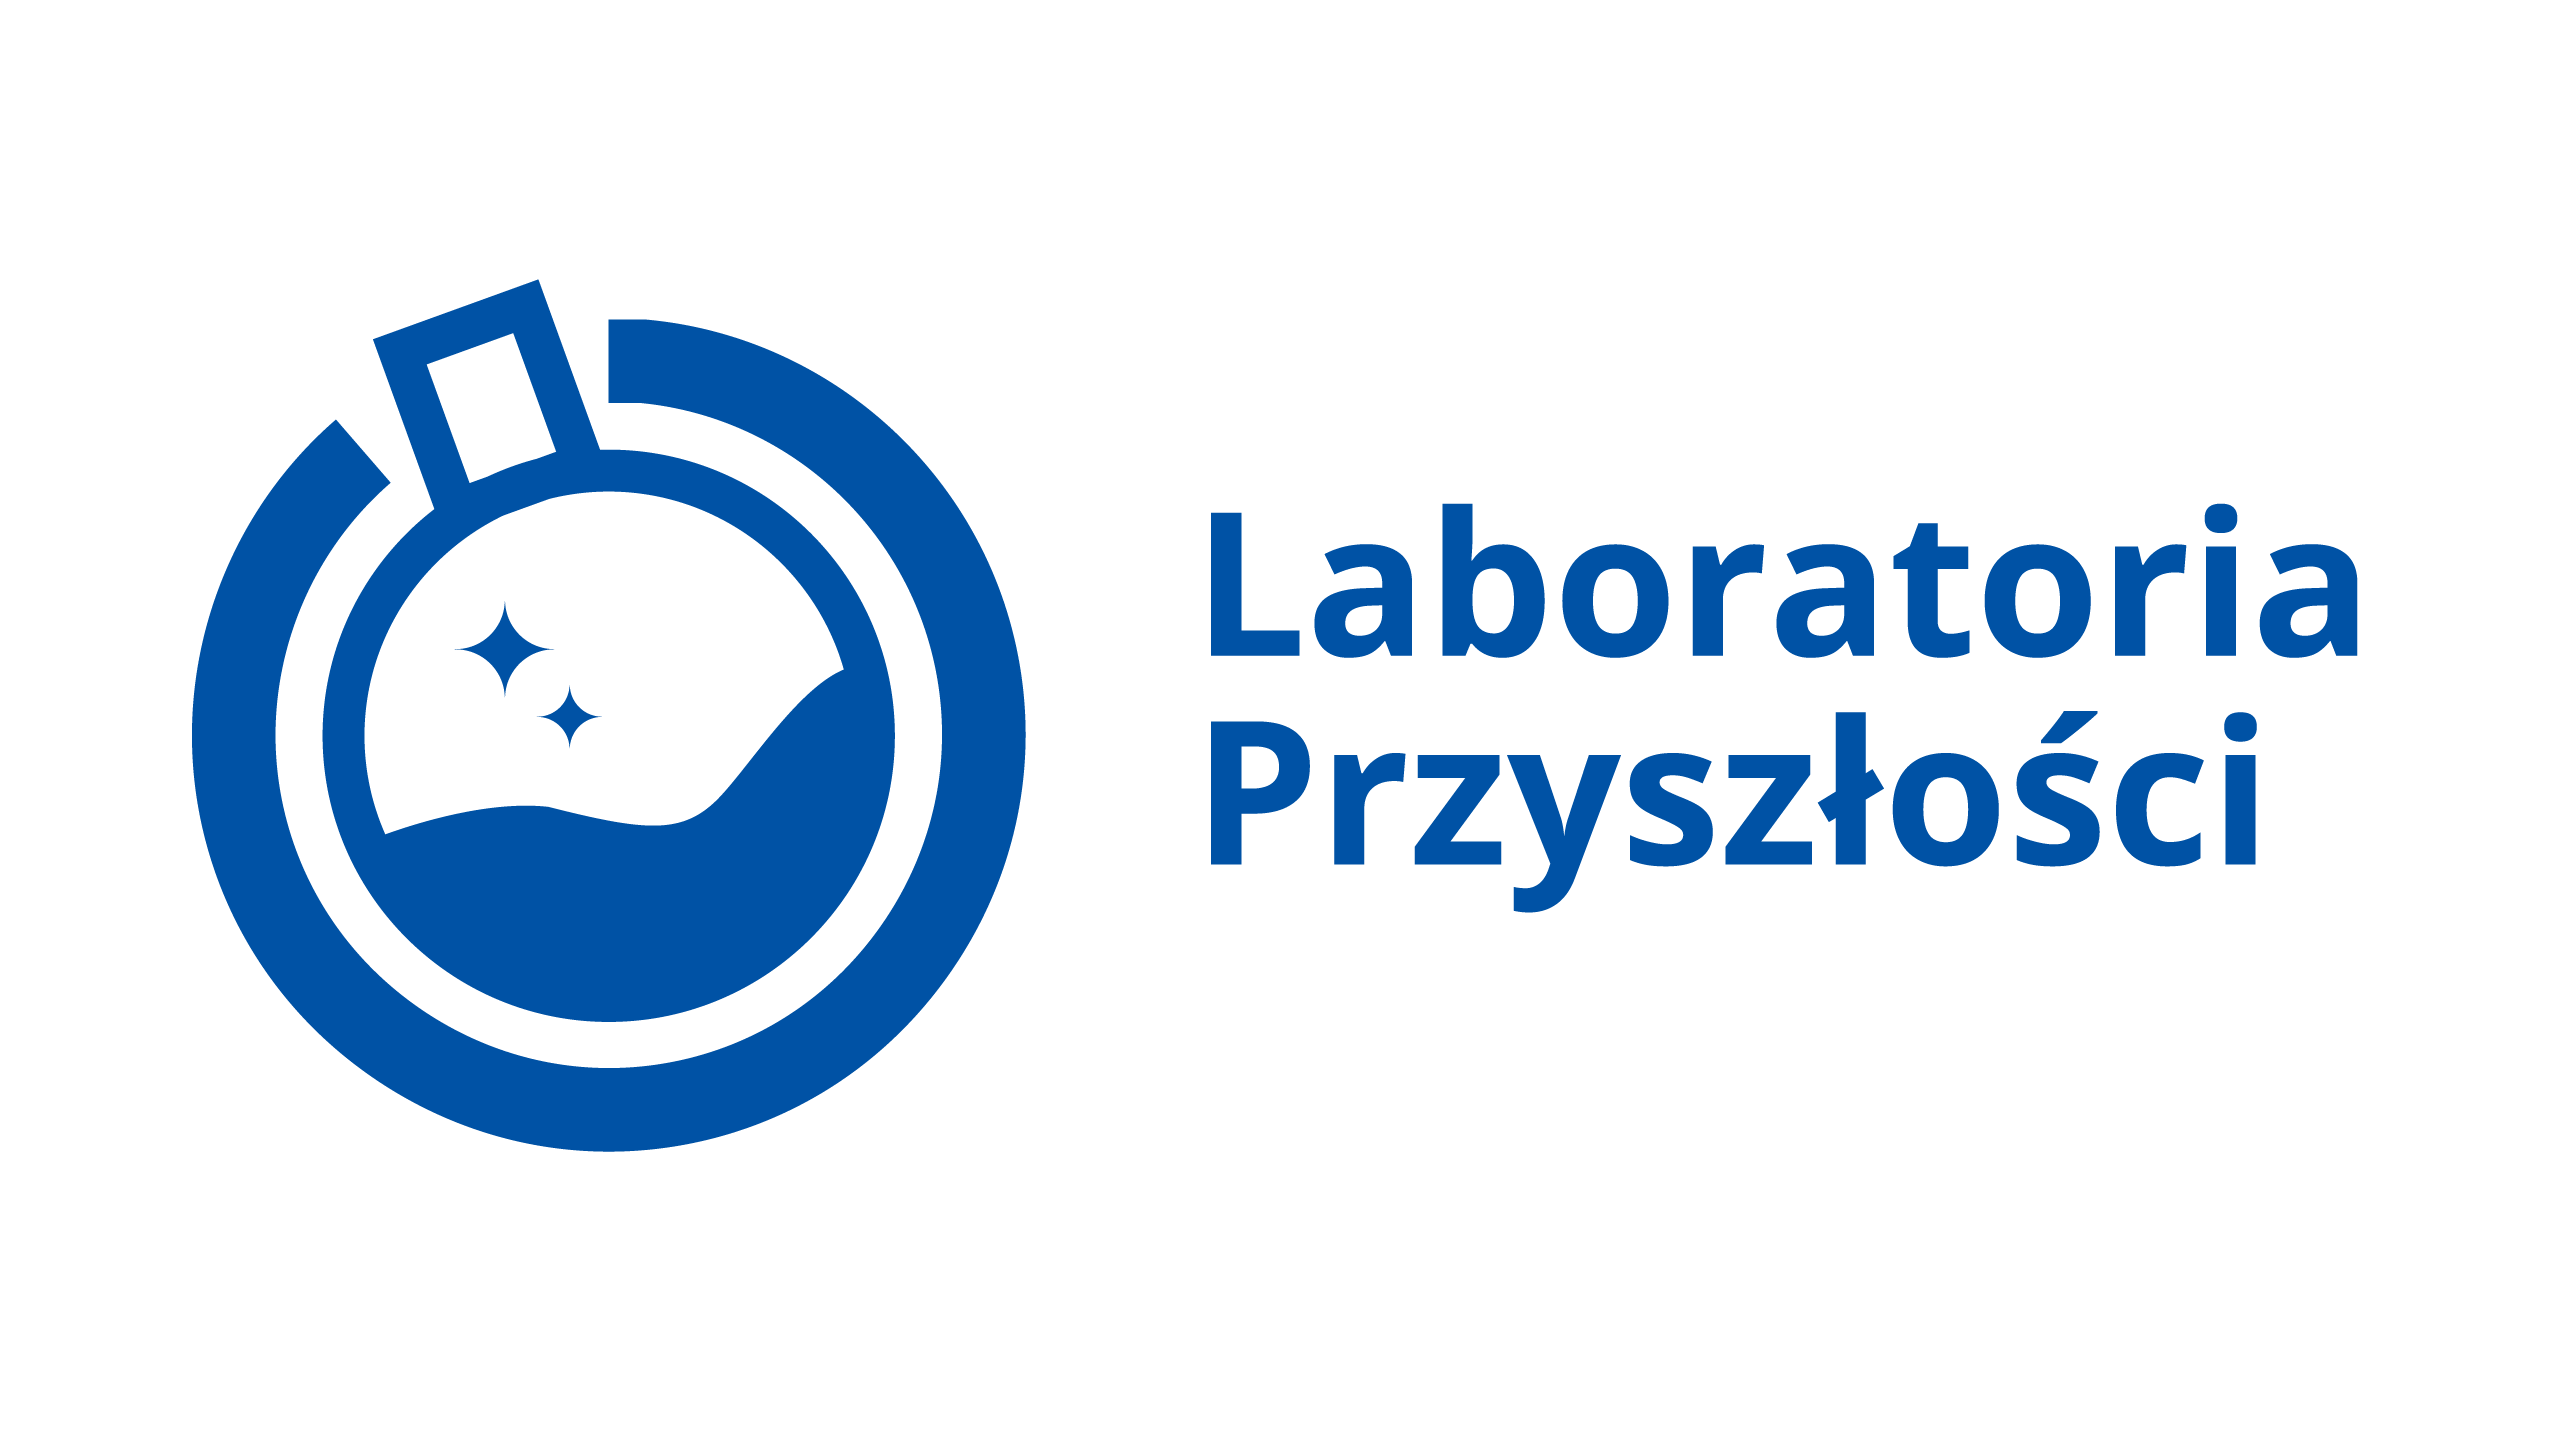 You are currently viewing Laboratoria Przyszłości